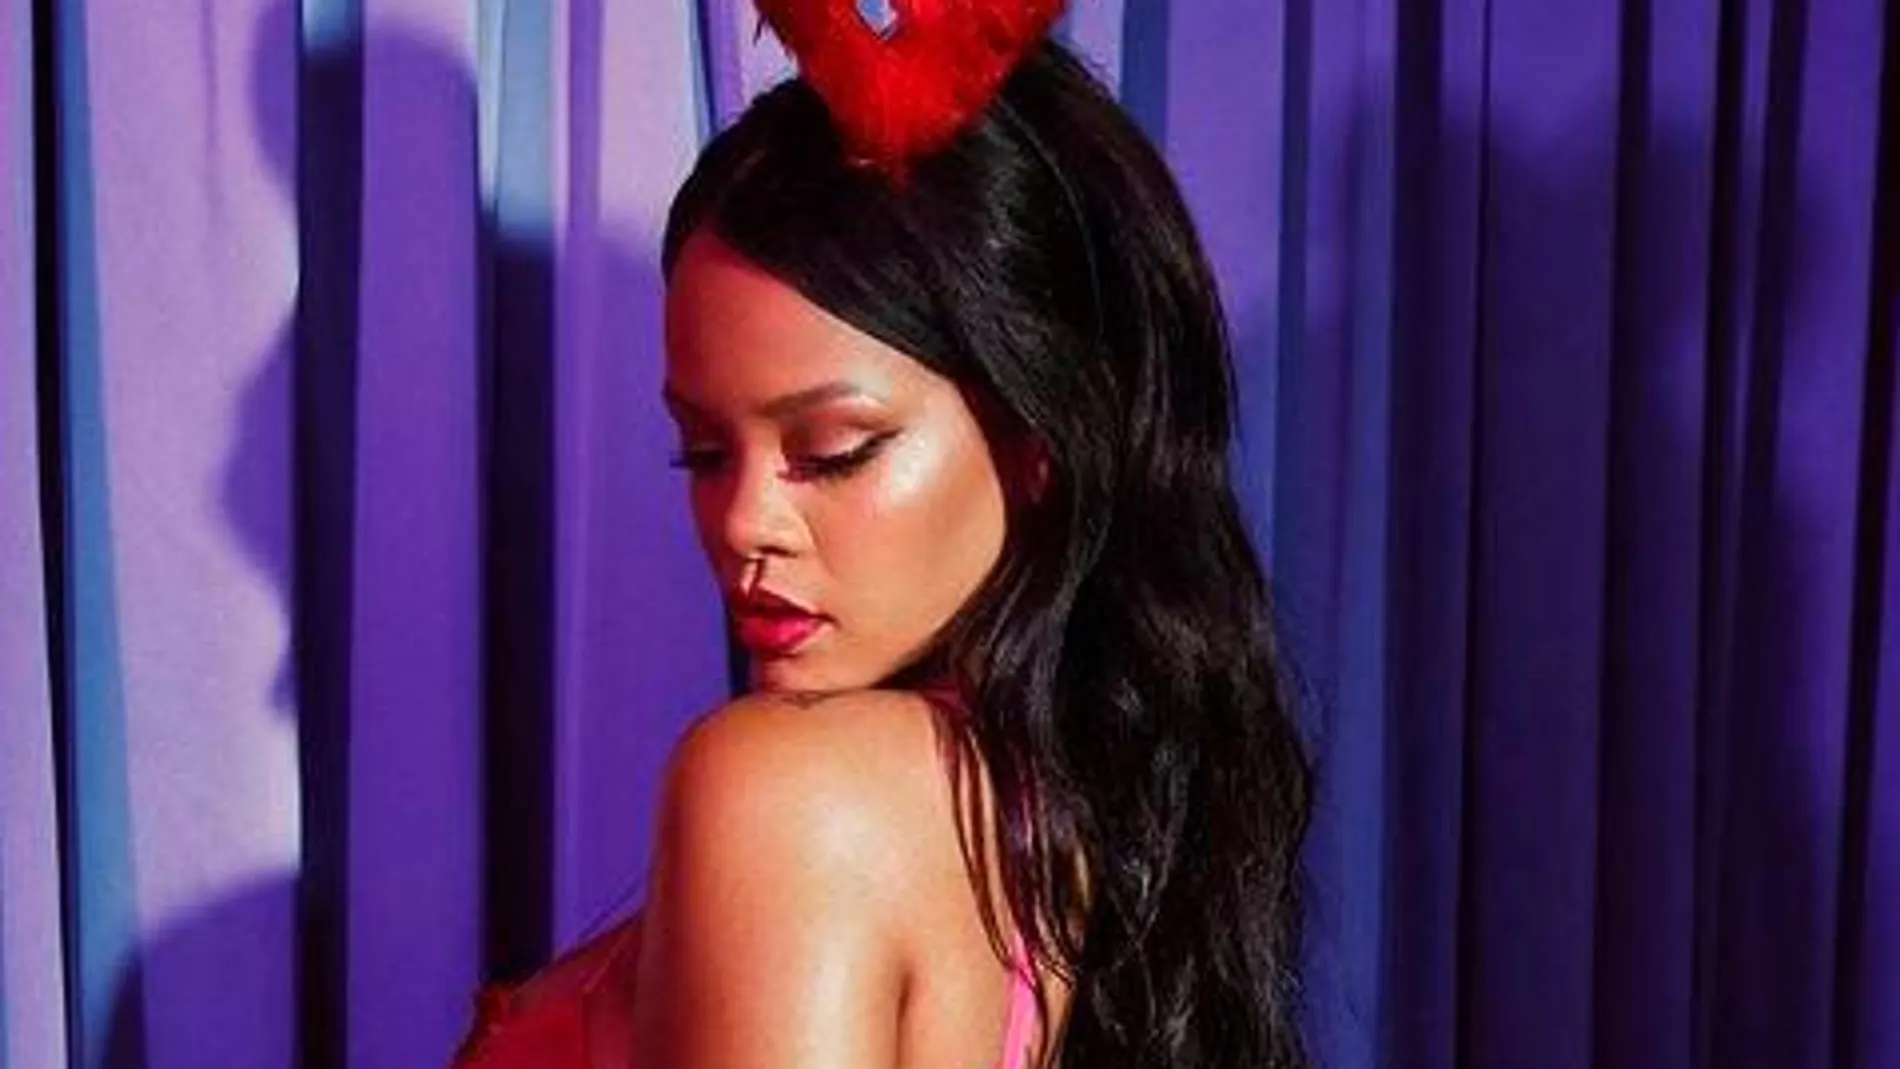 La cantante Rihanna, en una imagen de archivo / Instagram